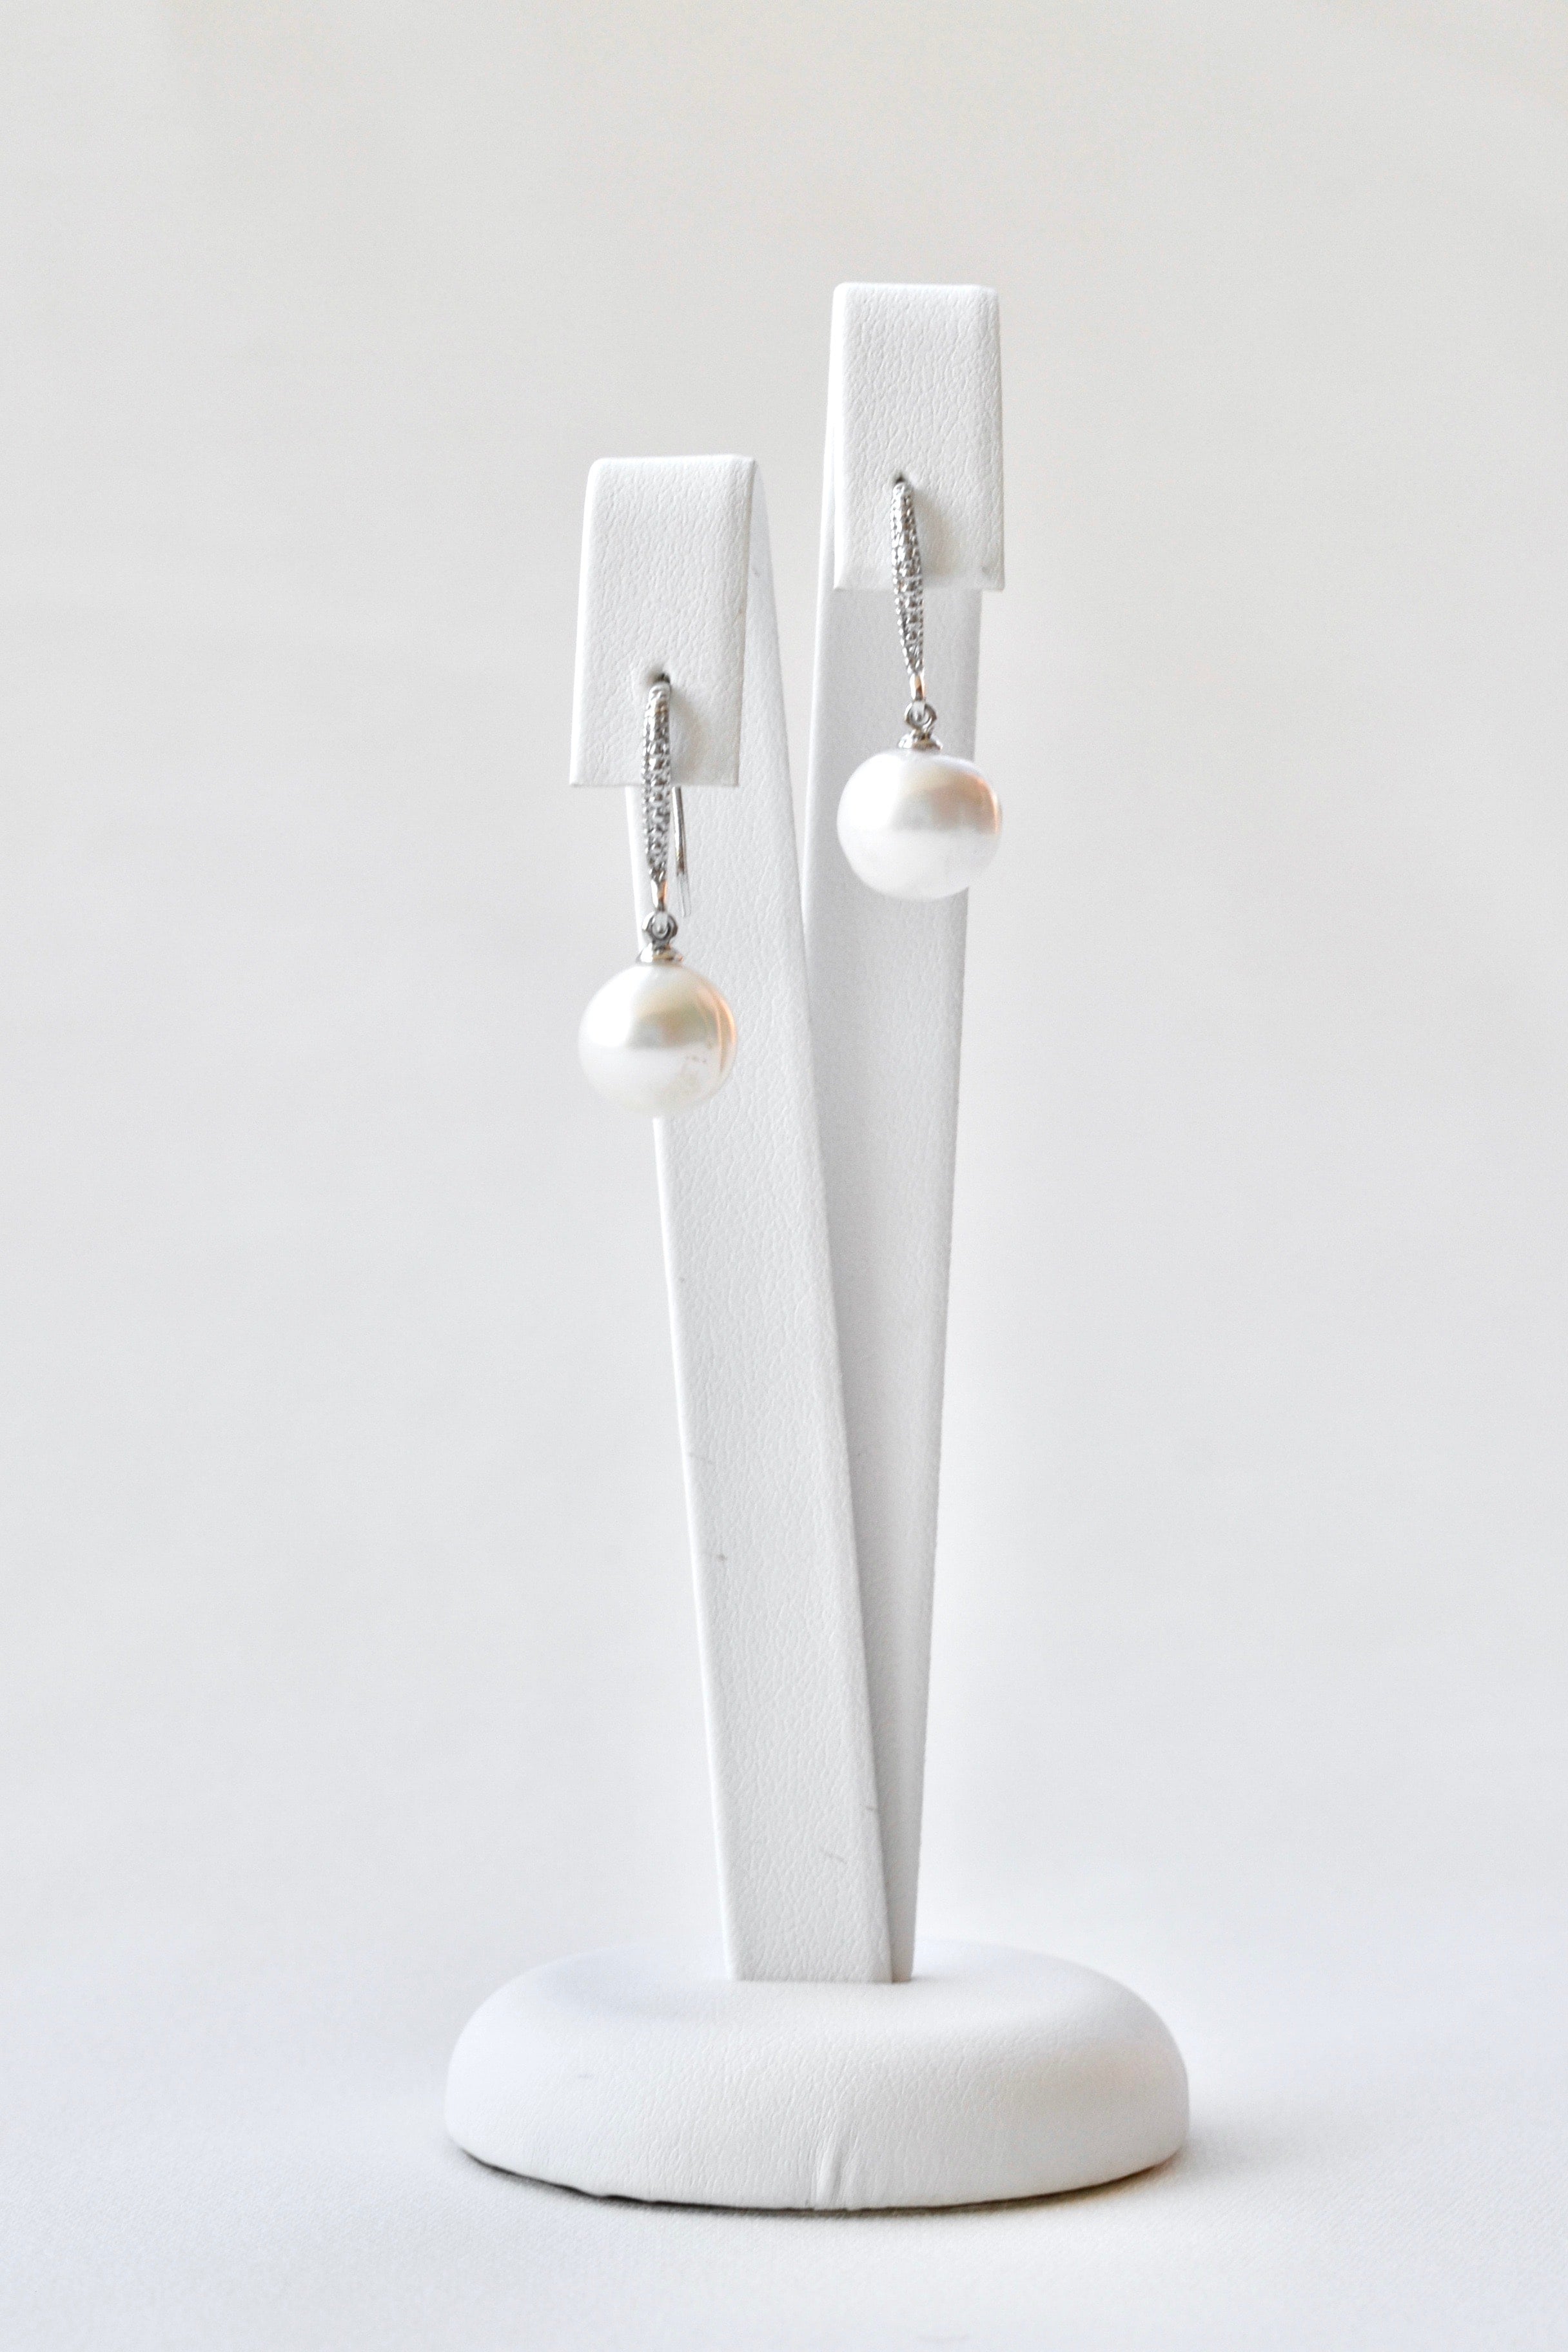 boucles d'oreilles avec une attache en argent et des petites cristaux, une perle pendant de cette attache et les boucles sont sur un socle à bijoux blanc